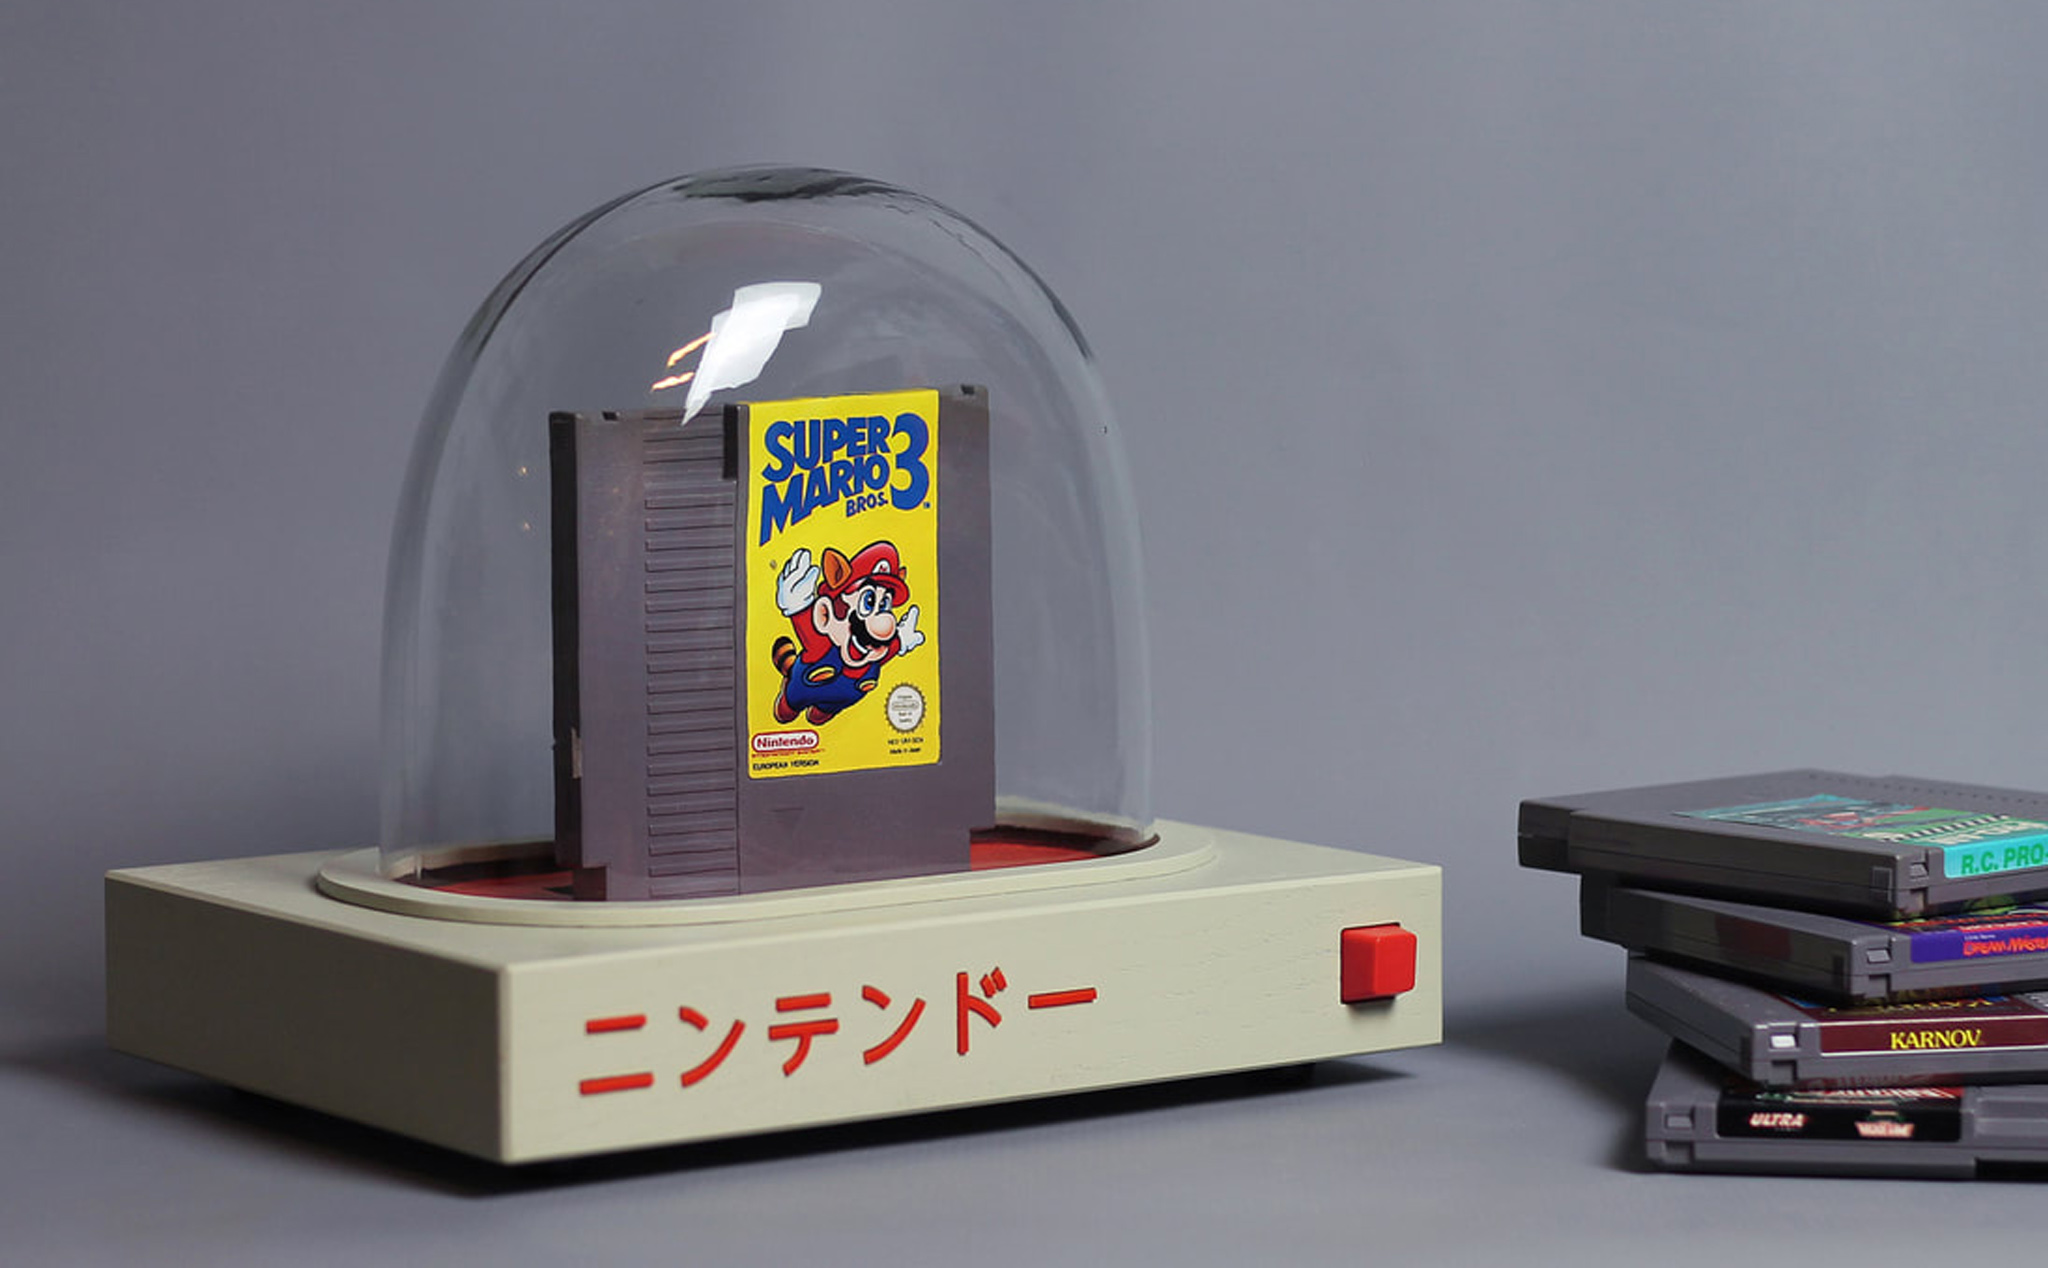 Pyua: Máy chơi game NES hồi sinh dưới bàn tay modder, giống lồng kính trưng bày băng game